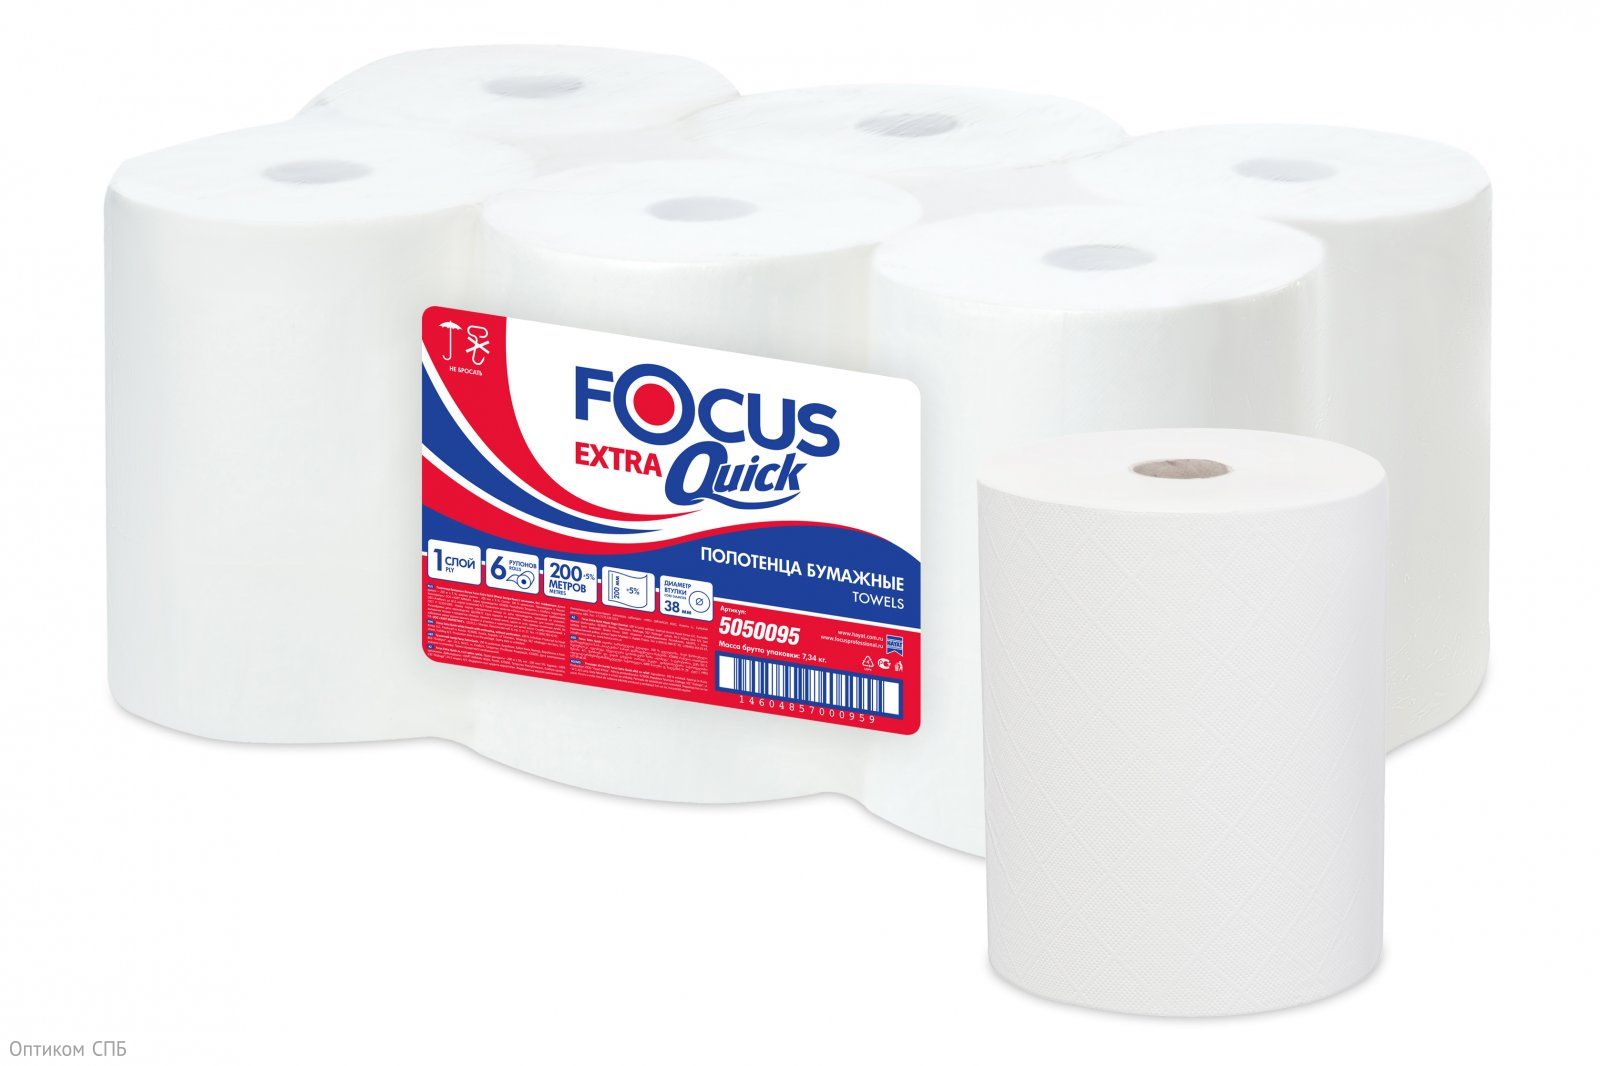 Полотенца бумажные Focus Exta Quick (Фокус) однослойные, белого цвета, без перфорации. Обеспечивают максимальный комфорт в использовании. Полотенца из 100% целлюлозы не сушат кожу, не распространяют бактерии. В рулоне 200 м, ширина 20 см.